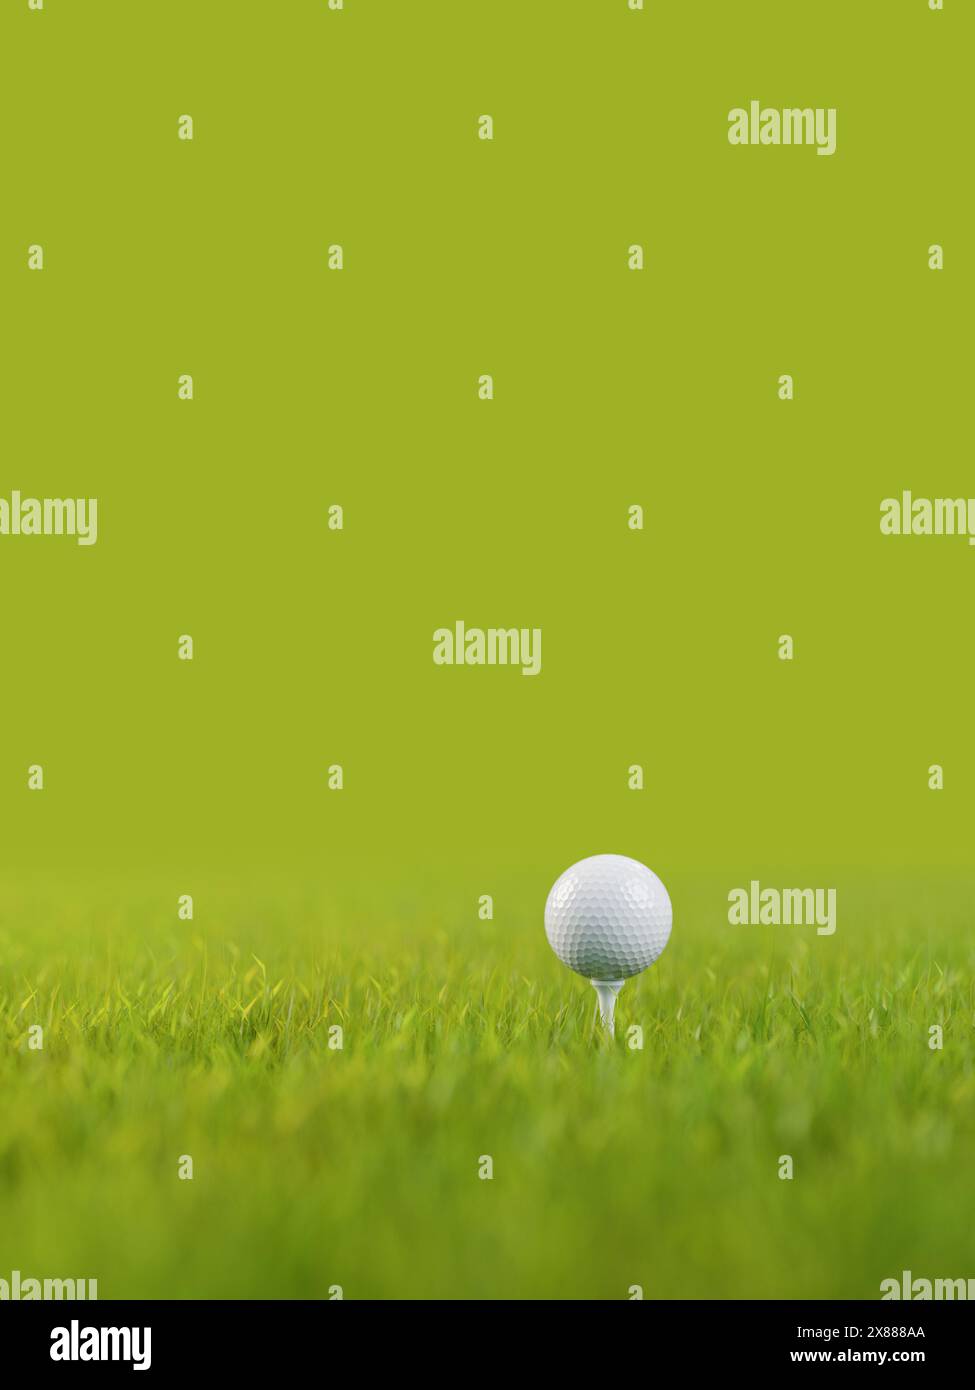 Ein Golfball auf einem Golfabschlag auf einem Rasen. Selektiver Fokus – sehr geringe Schärfentiefe. Grüner Hintergrund. Stockfoto